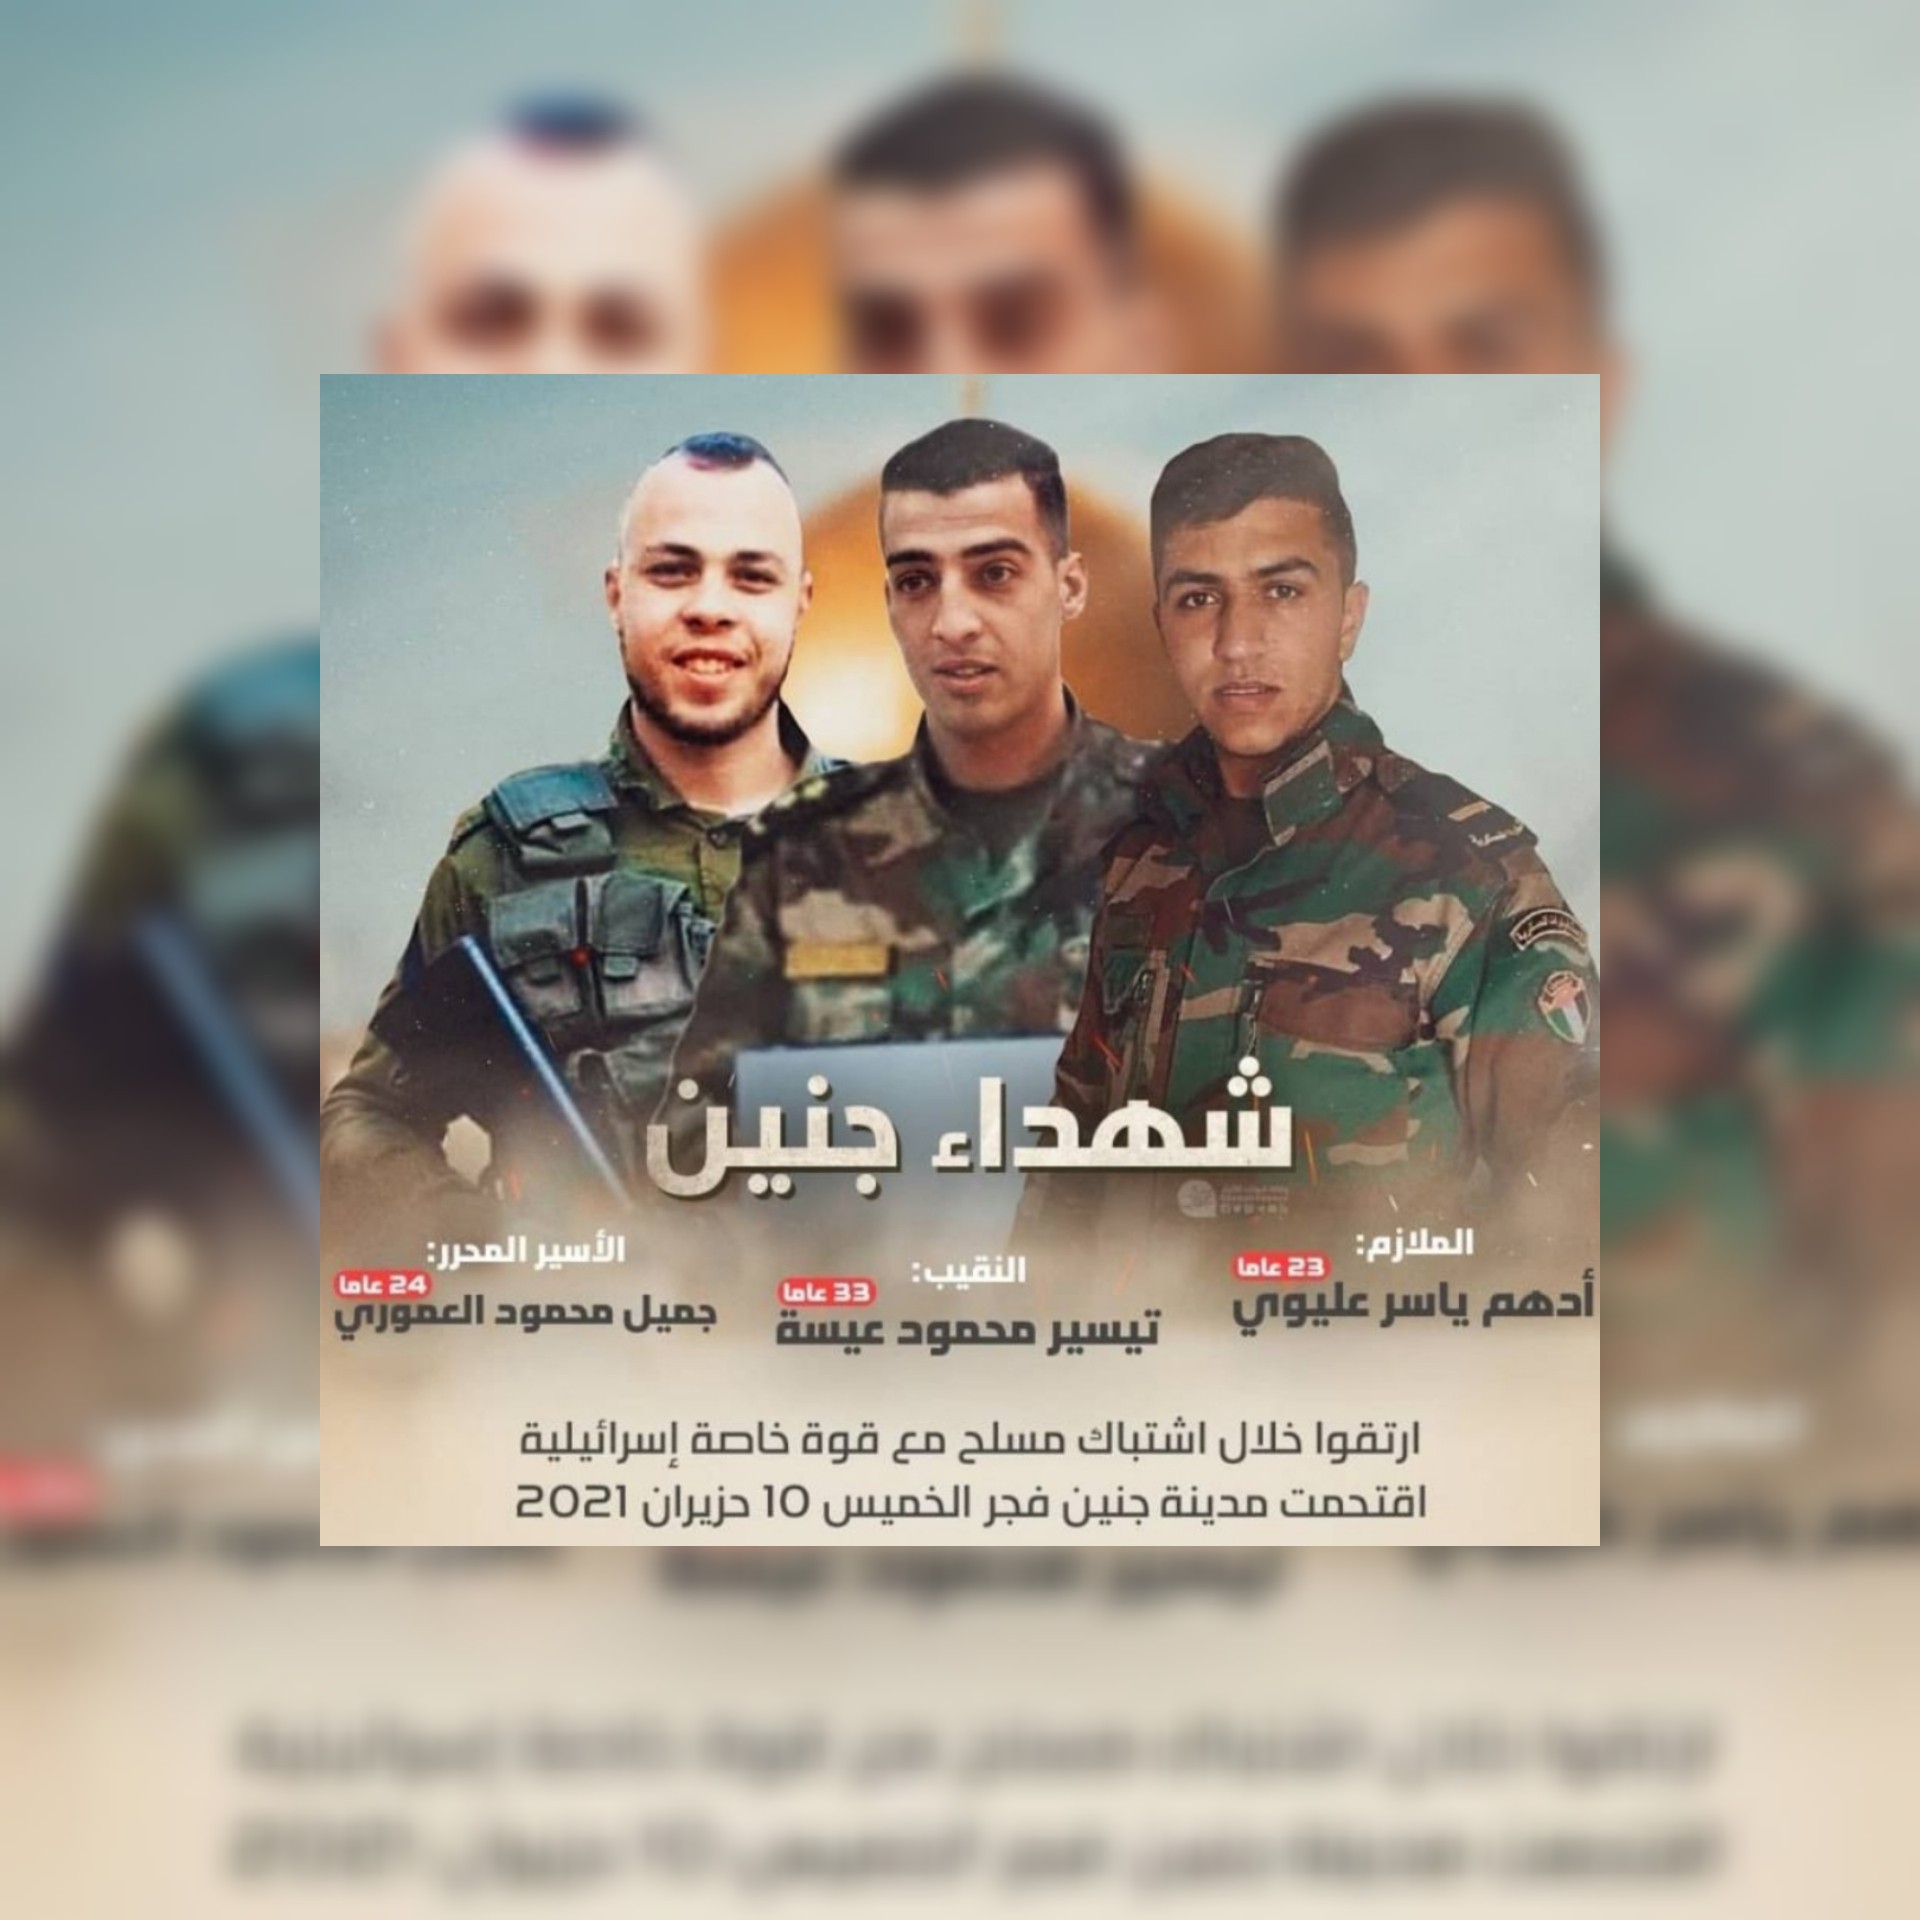 بالفيديو والصور  / إستشهاد ثلاثة فلسطينيين في جنين أثناء اشتباك مع القوات الإسرائيلية